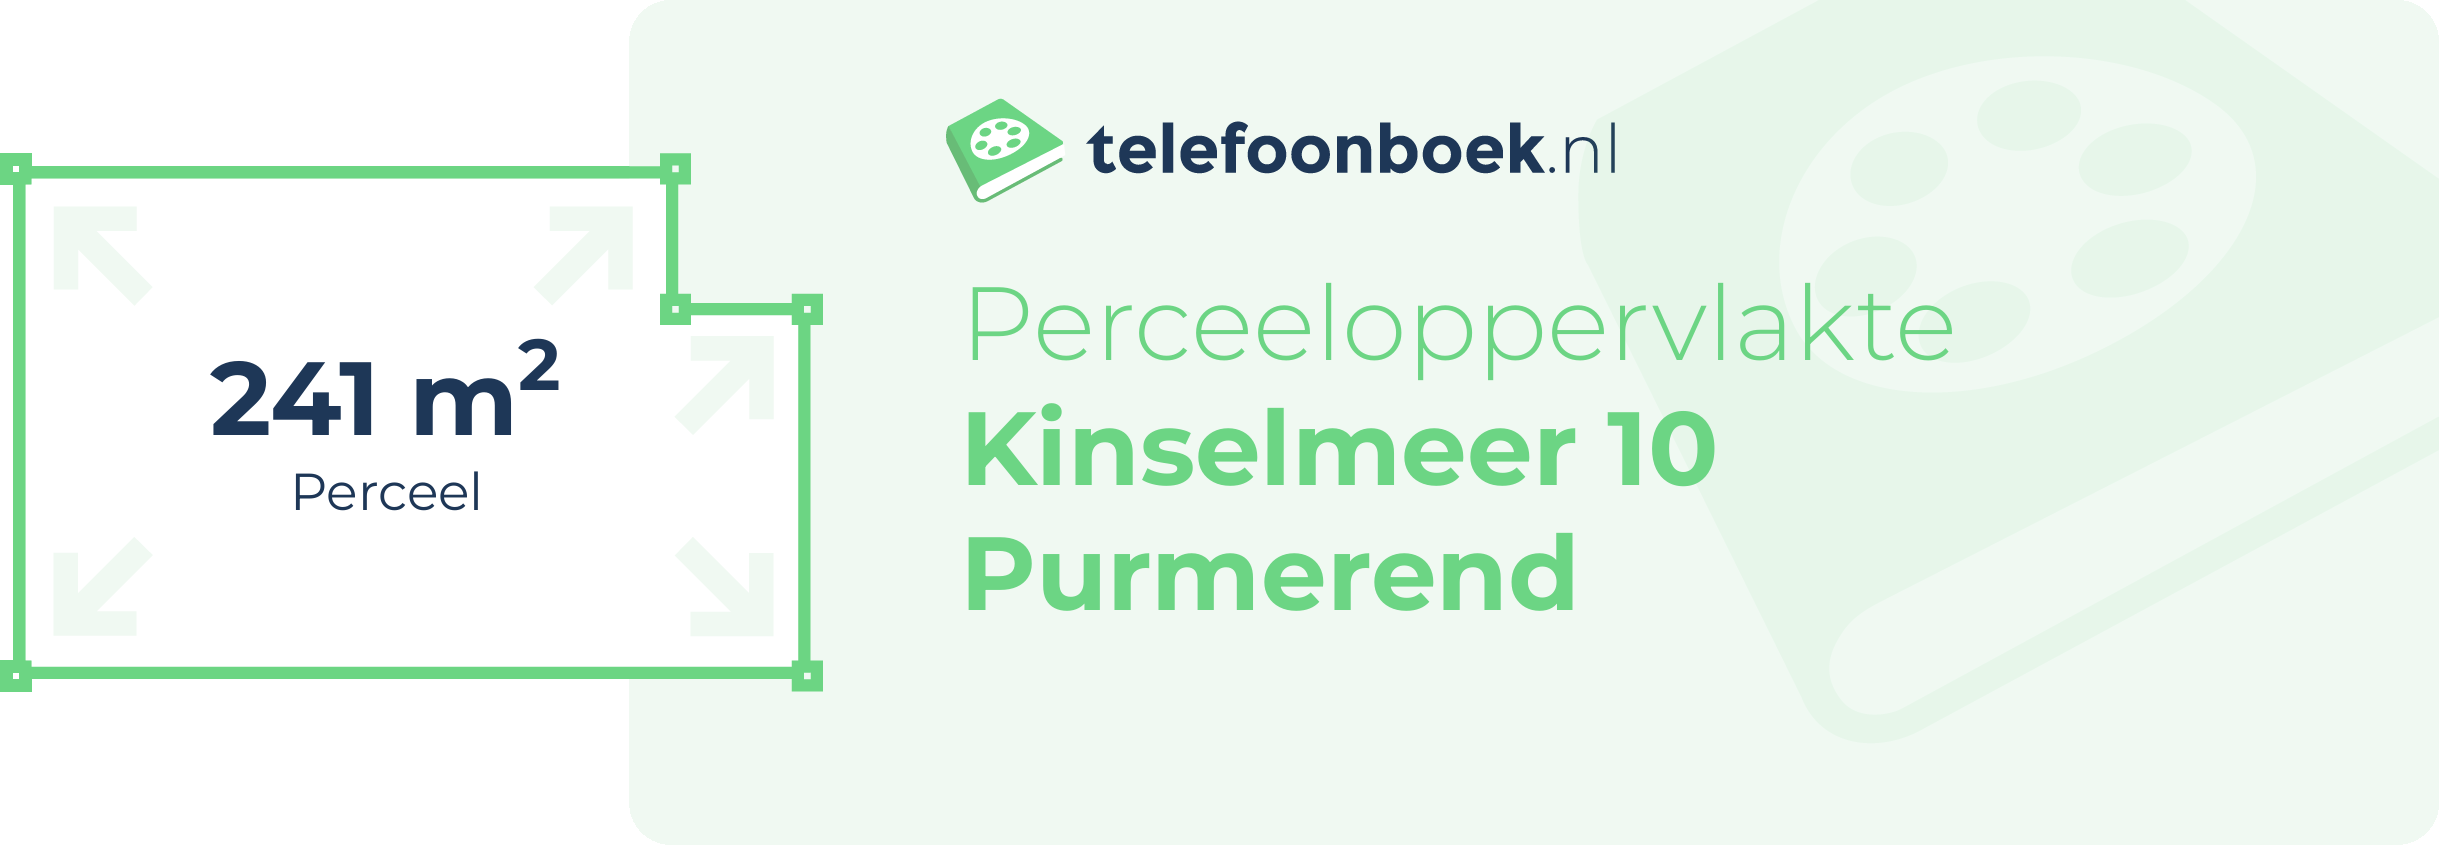 Perceeloppervlakte Kinselmeer 10 Purmerend